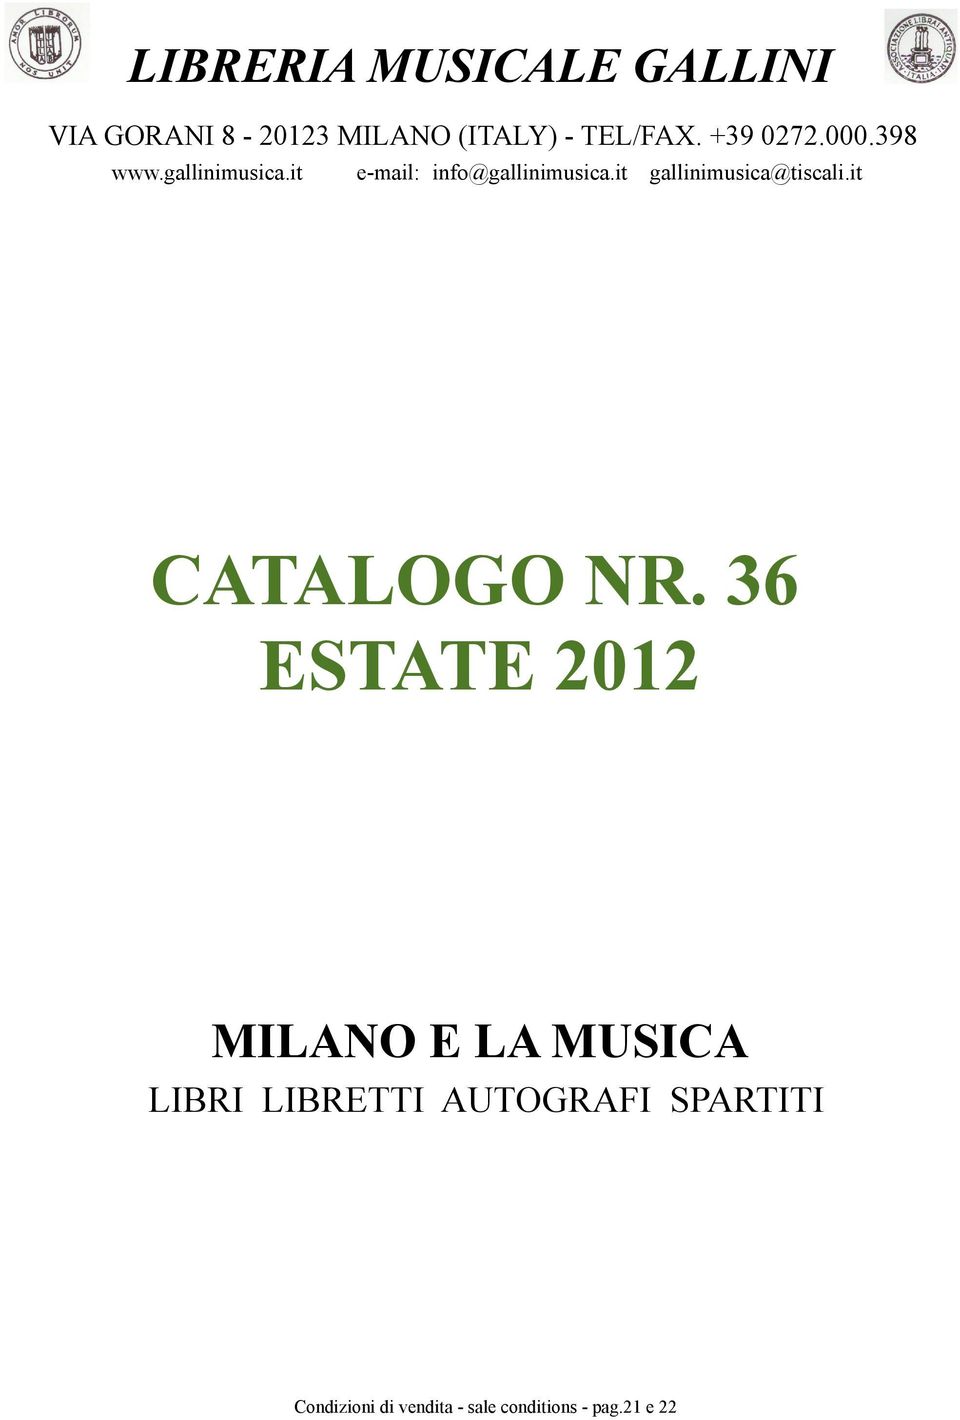 35 36 AUTUNNO ESTATE 2012 2011 OPERA ITALIANA MILANO E LA MUSICA SPARTITI PER CANTO E PIANOFORTE LIBRI LIBRETTI